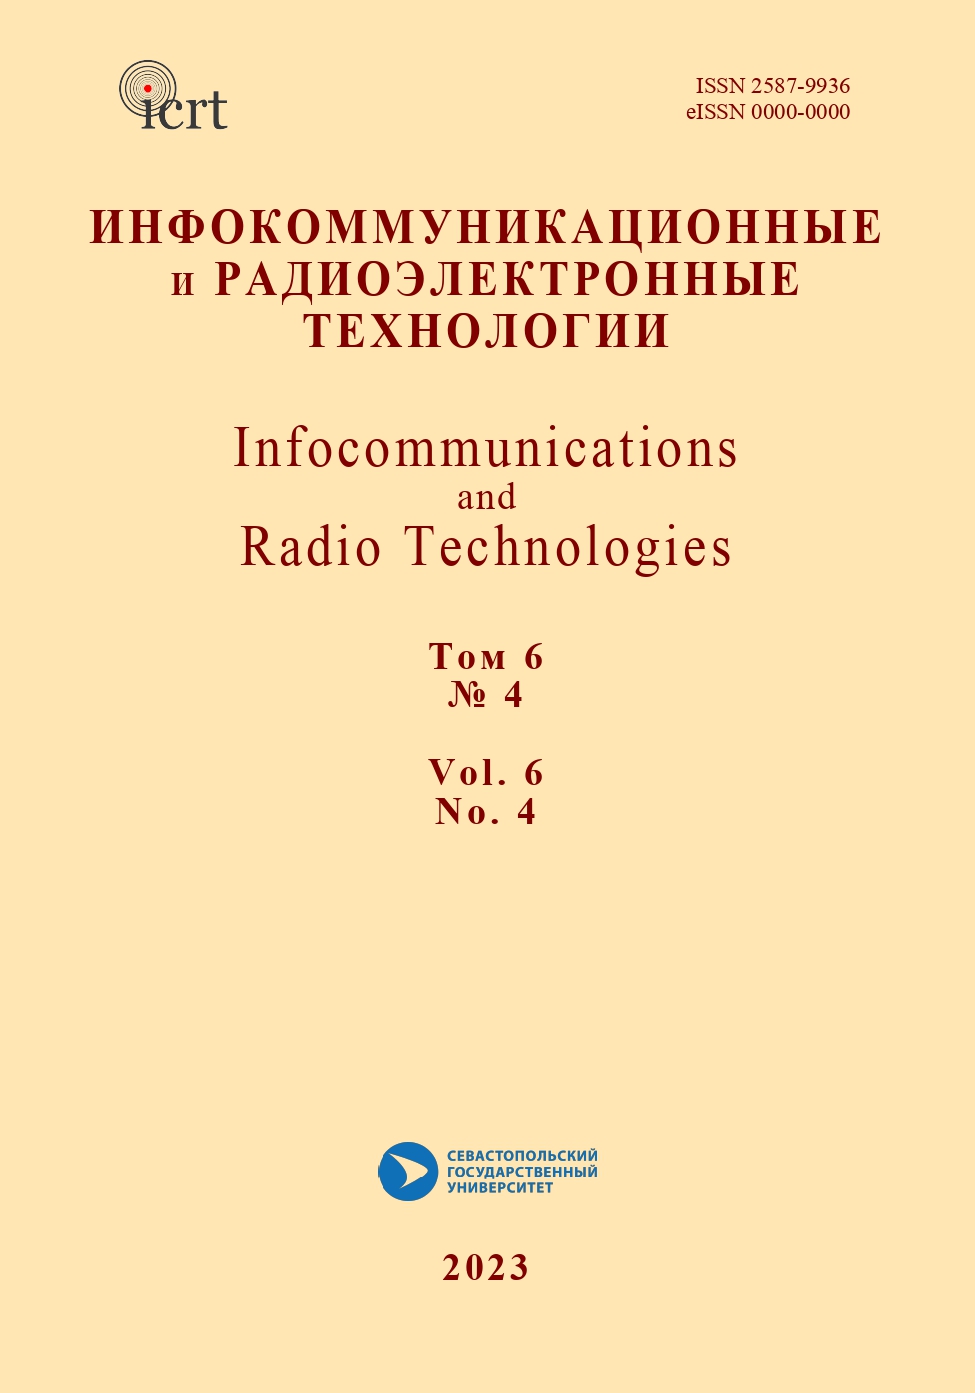             Научные открытия и изобретения  Ли де Фореста, способствовавшие прогрессу в  радиоламповых технологиях и развитии социума
    